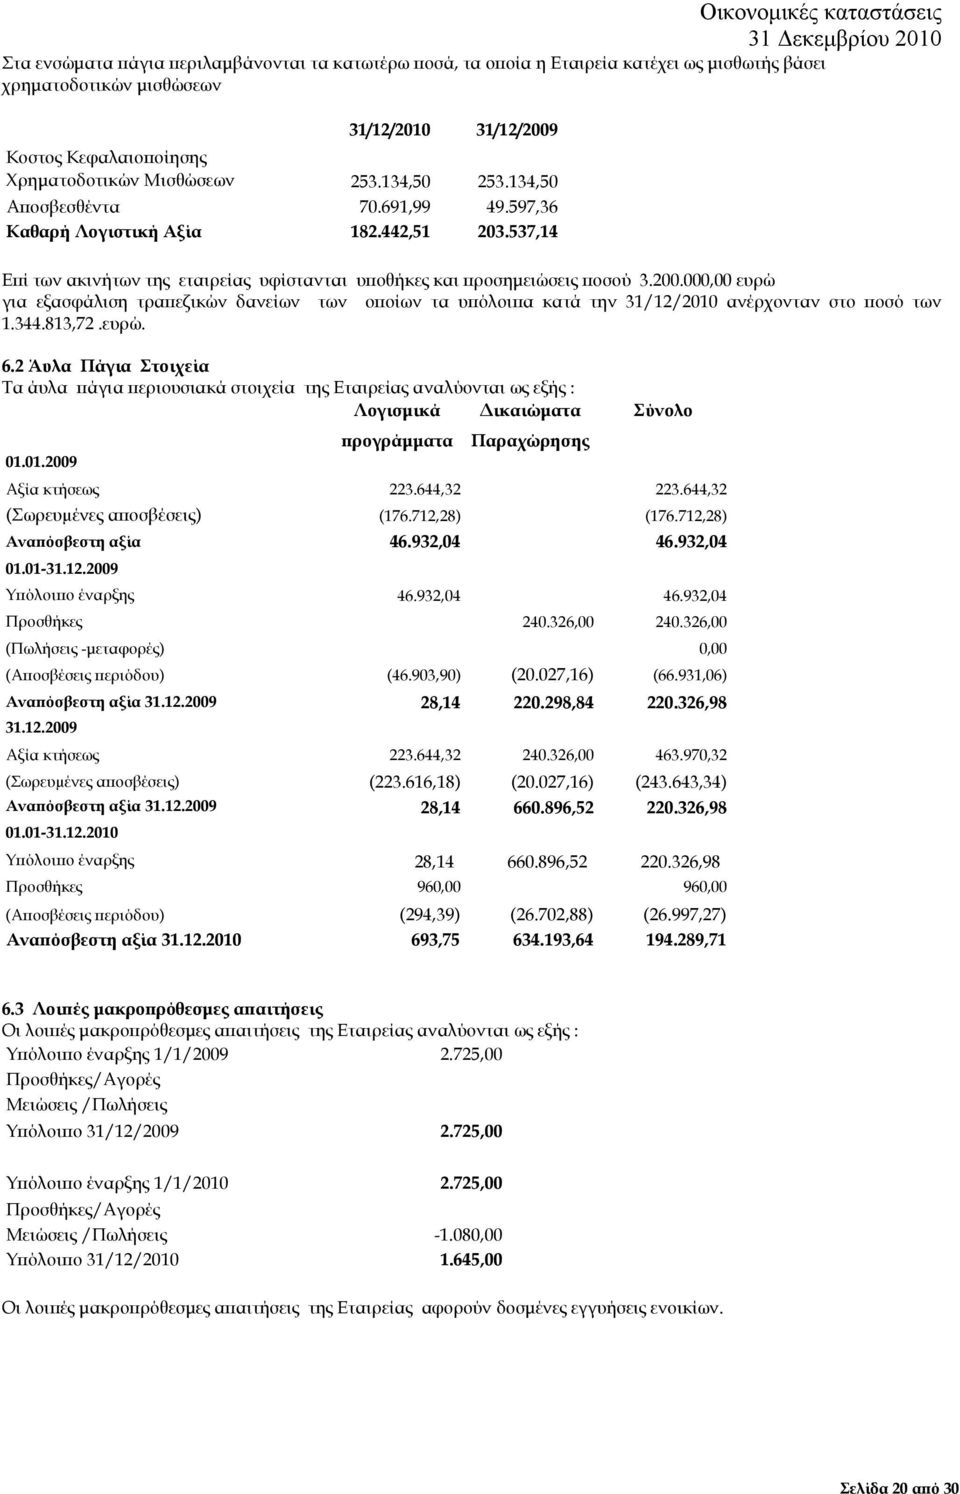 000,00 ευρώ για εξασφάλιση τρα εζικών δανείων των ο οίων τα υ όλοι α κατά την 31/12/2010 ανέρχονταν στο οσό των 1.344.813,72.ευρώ. 6.